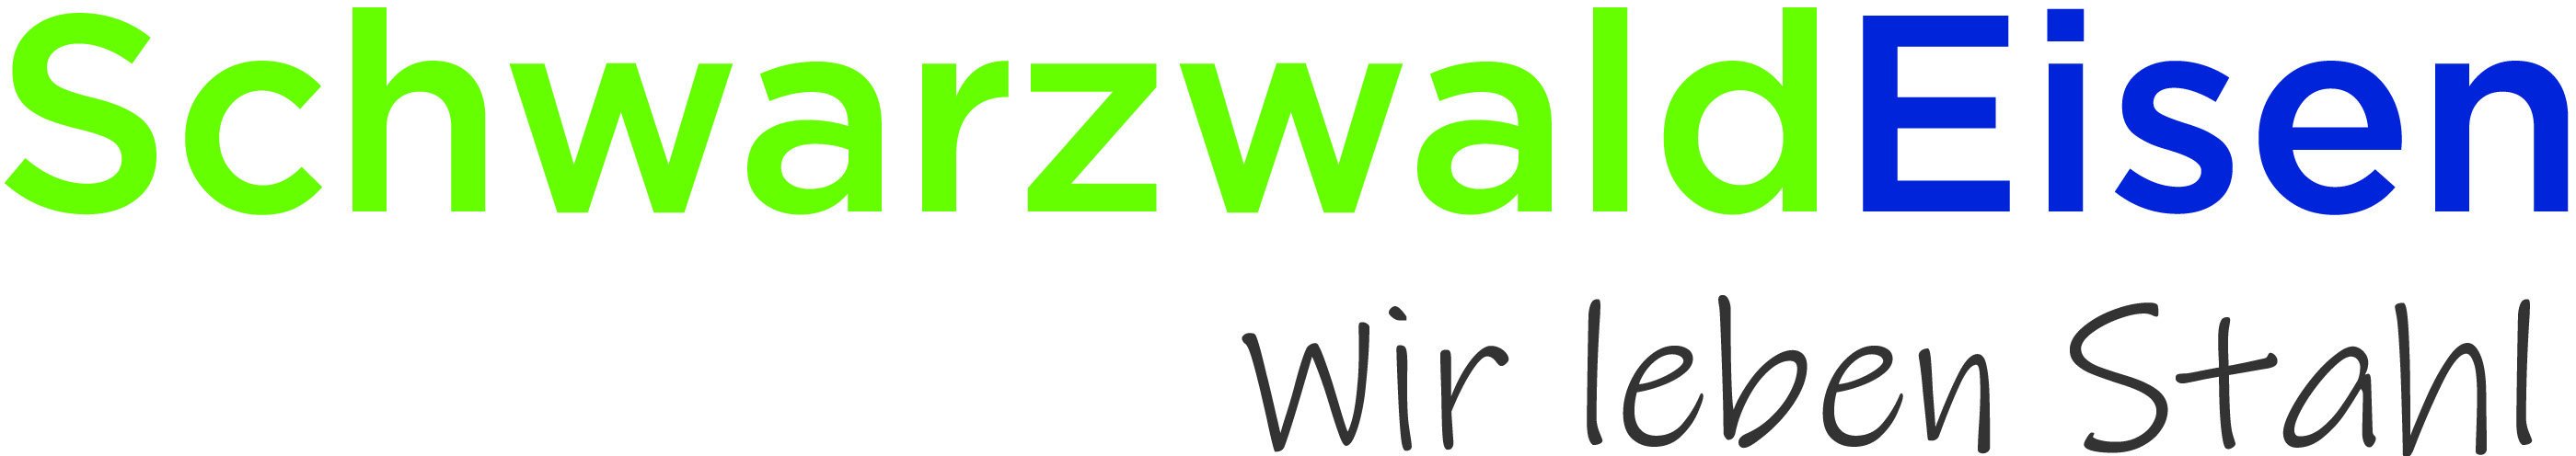 Schwarzwald-Eisenhandel GmbH & Co. KG